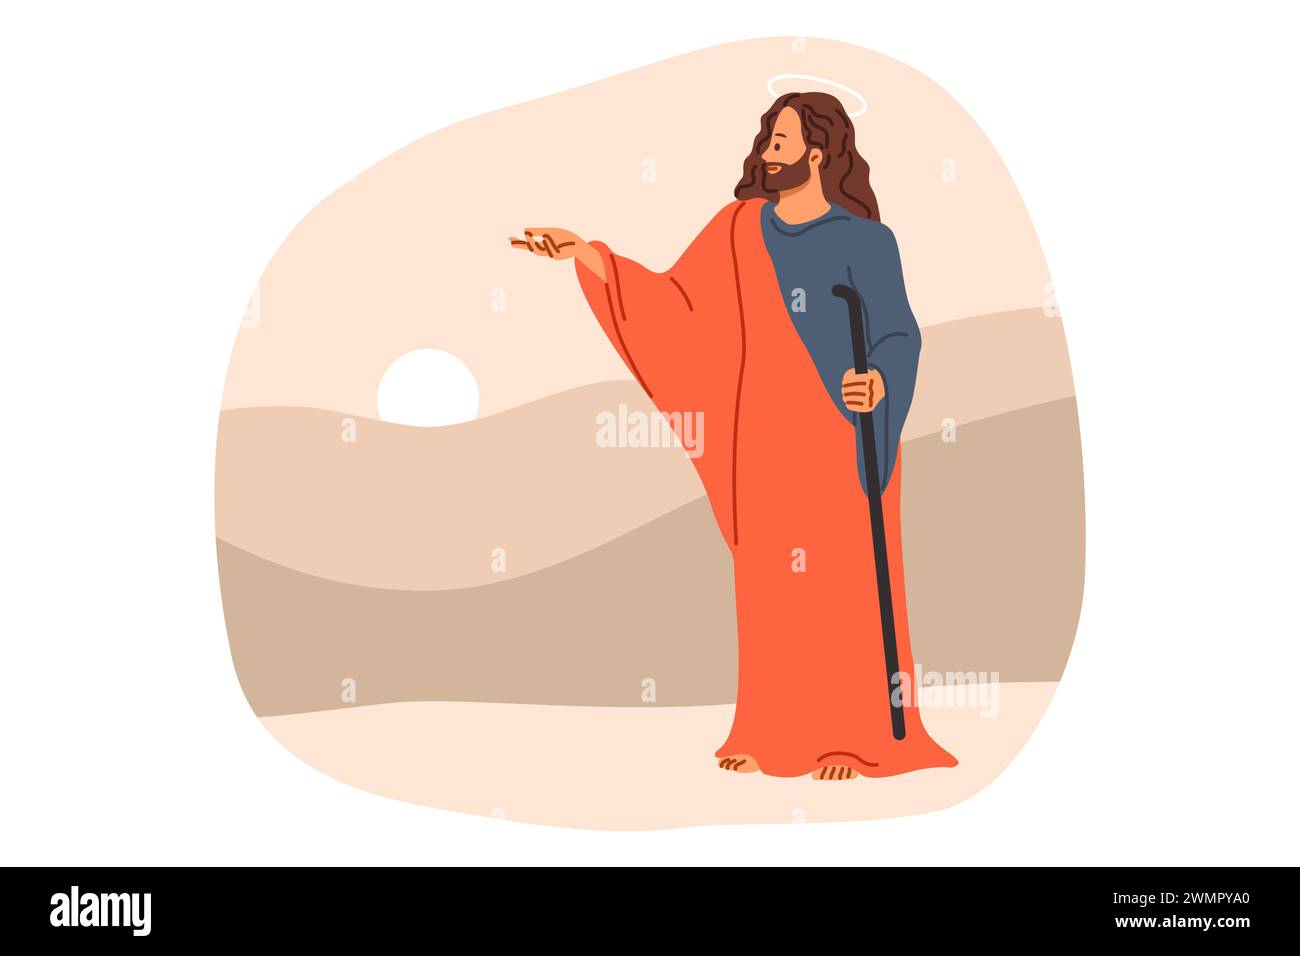 Gesù cristo dalla bibbia e dalla religione cristiana, si erge vicino alle colline e al tramonto, dando parole di separazione Illustrazione Vettoriale